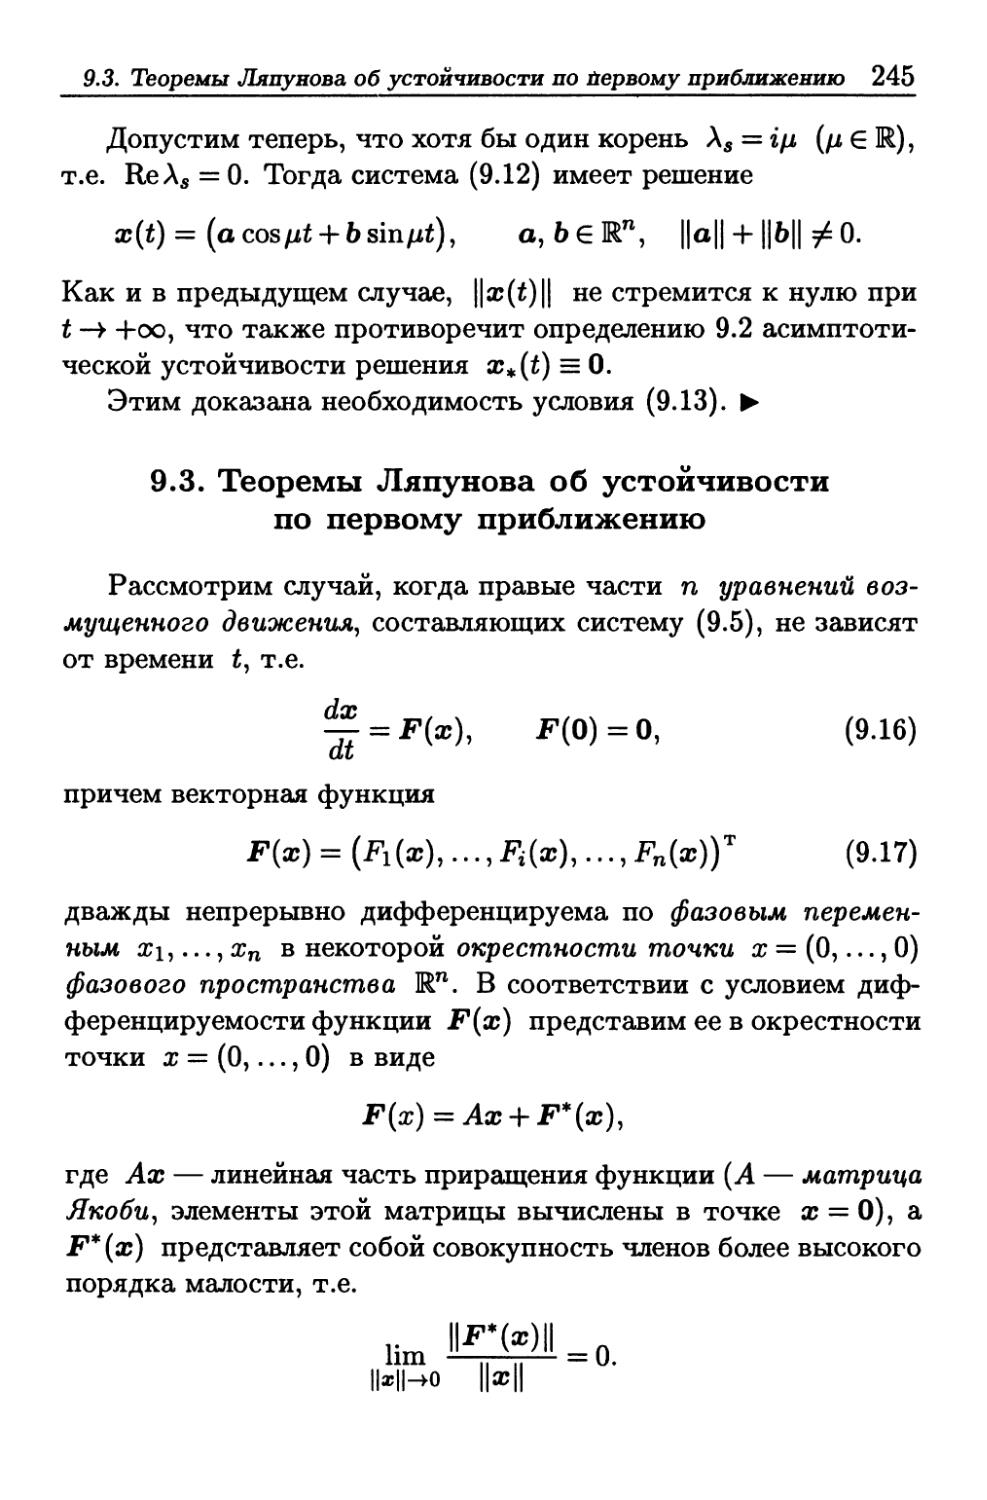 9.3. Теоремы Ляпунова об устойчивости по первому приближению